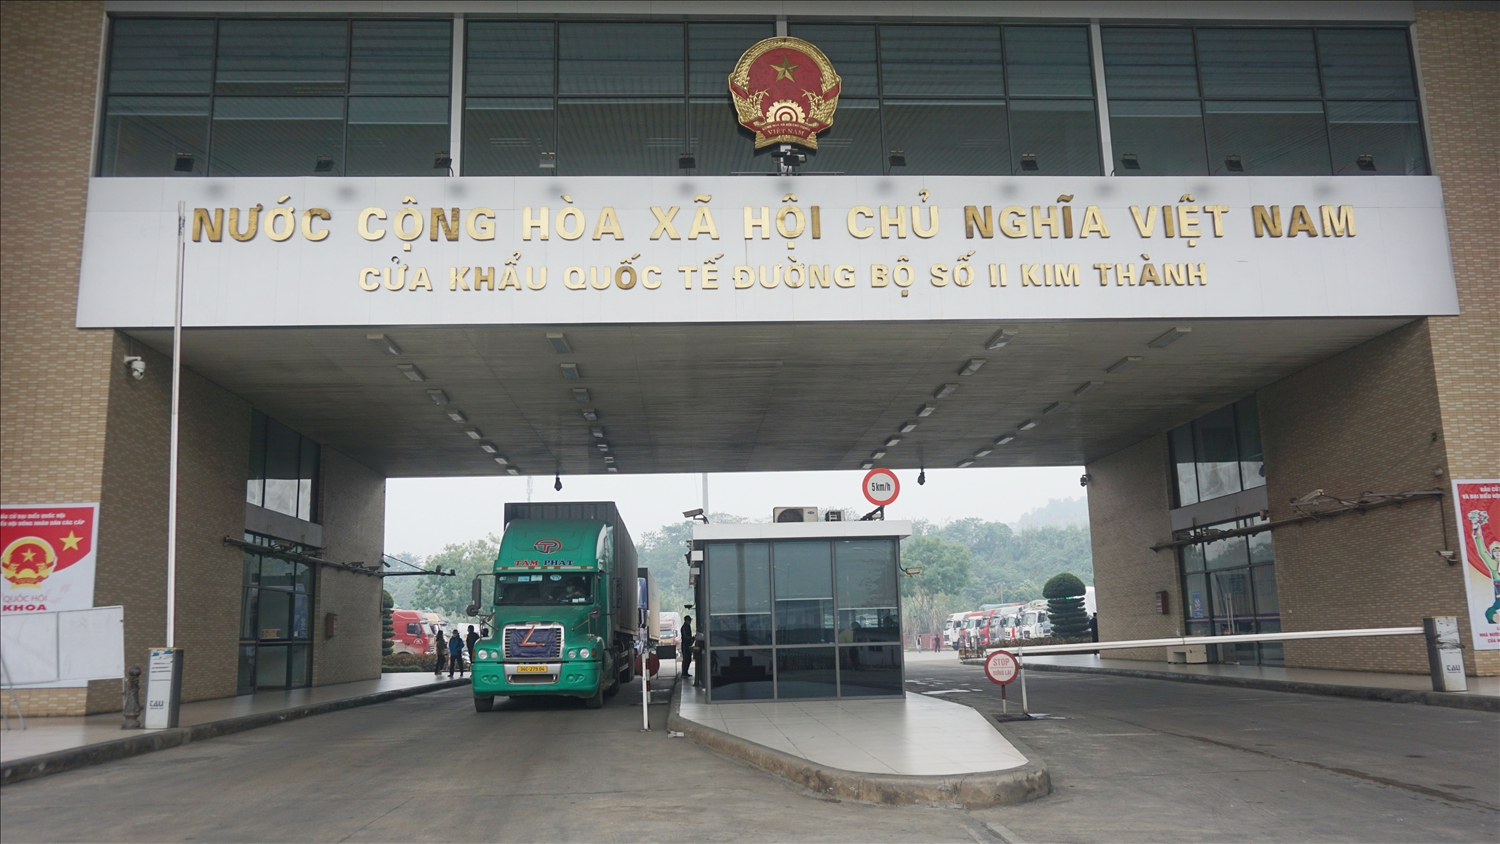 Cửa khẩu Quốc tế đường bộ số II Kim Thành tạm dừng hoạt động XNK